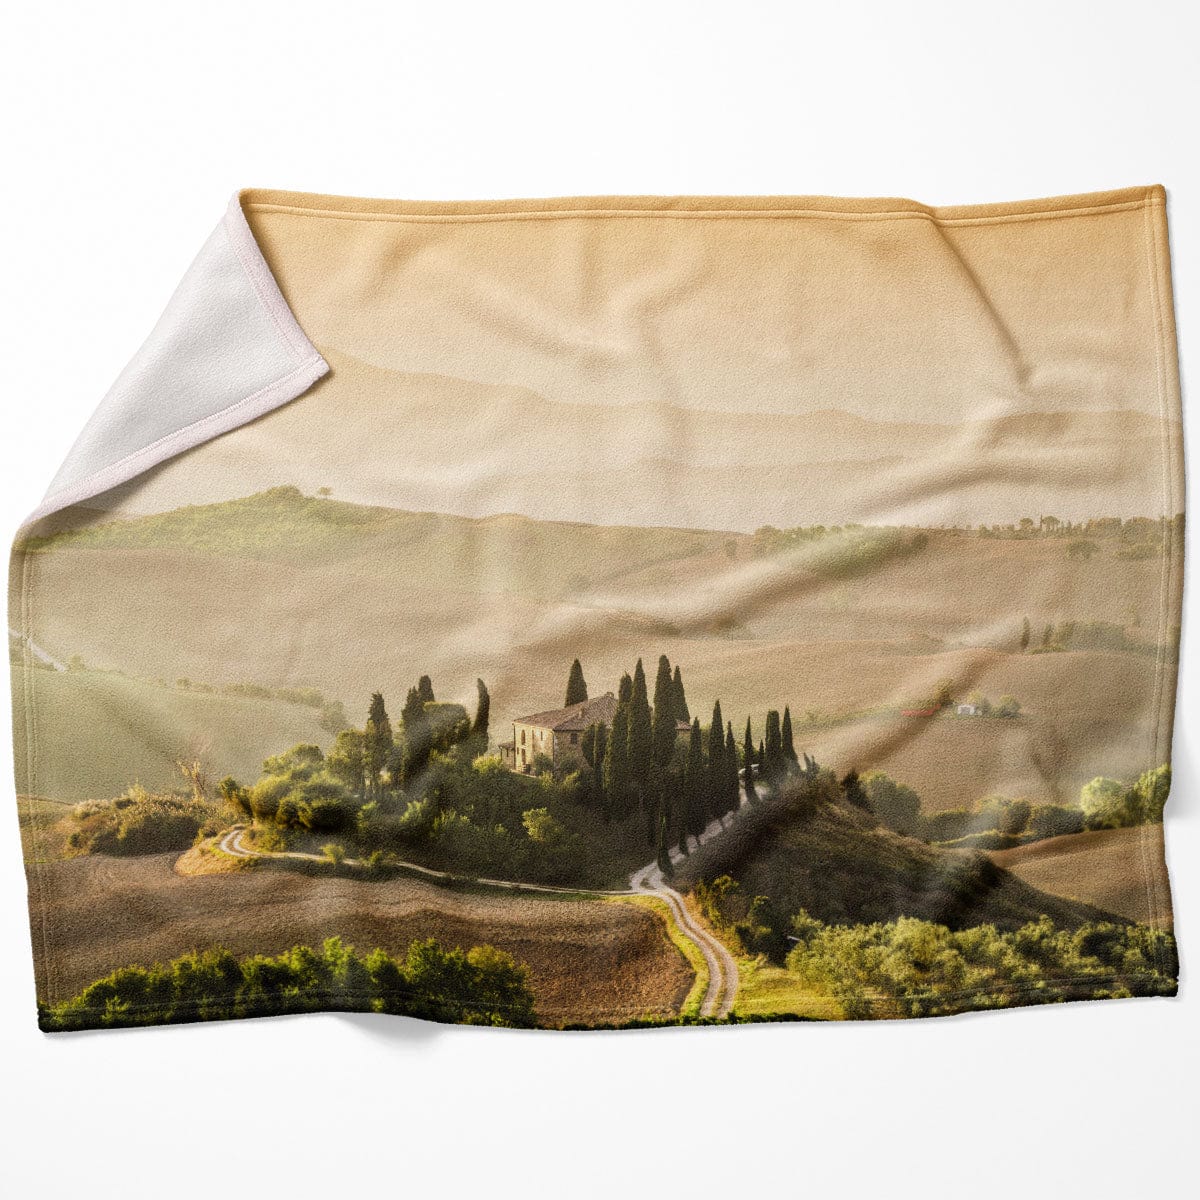 Tuscany Landscape Blanket